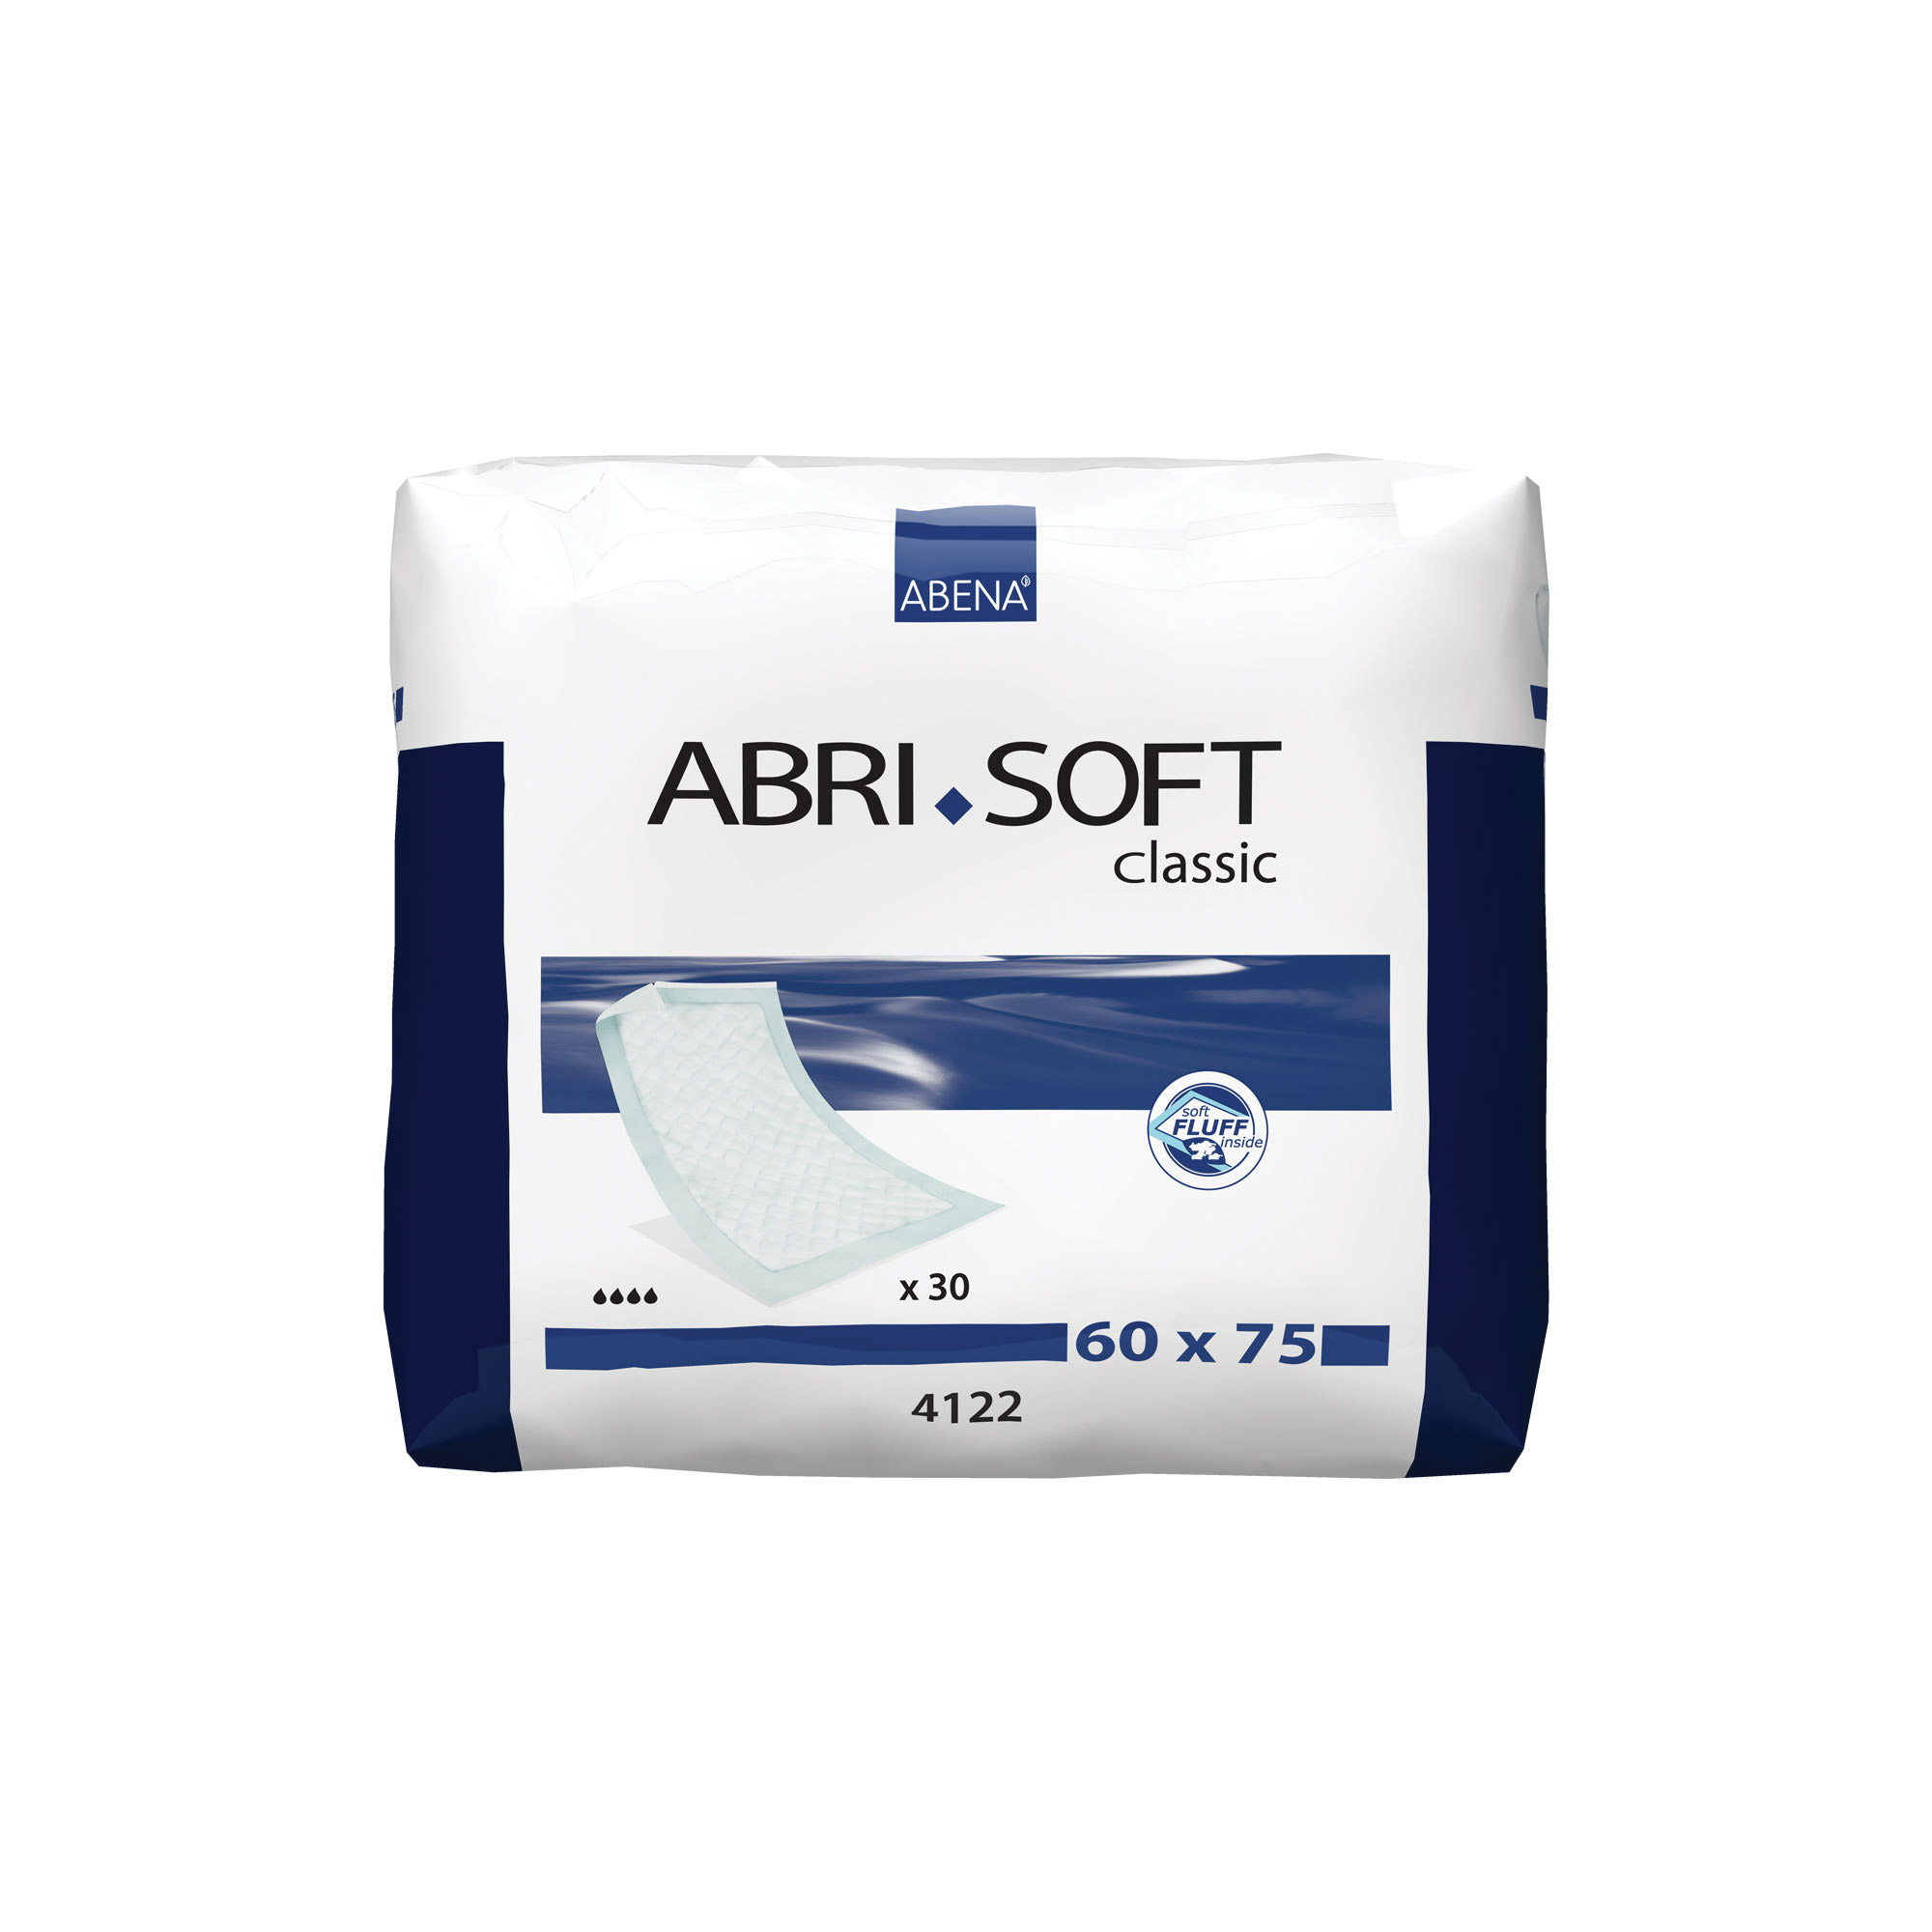 Abri-Soft Classic 60X75 - 30 Pack